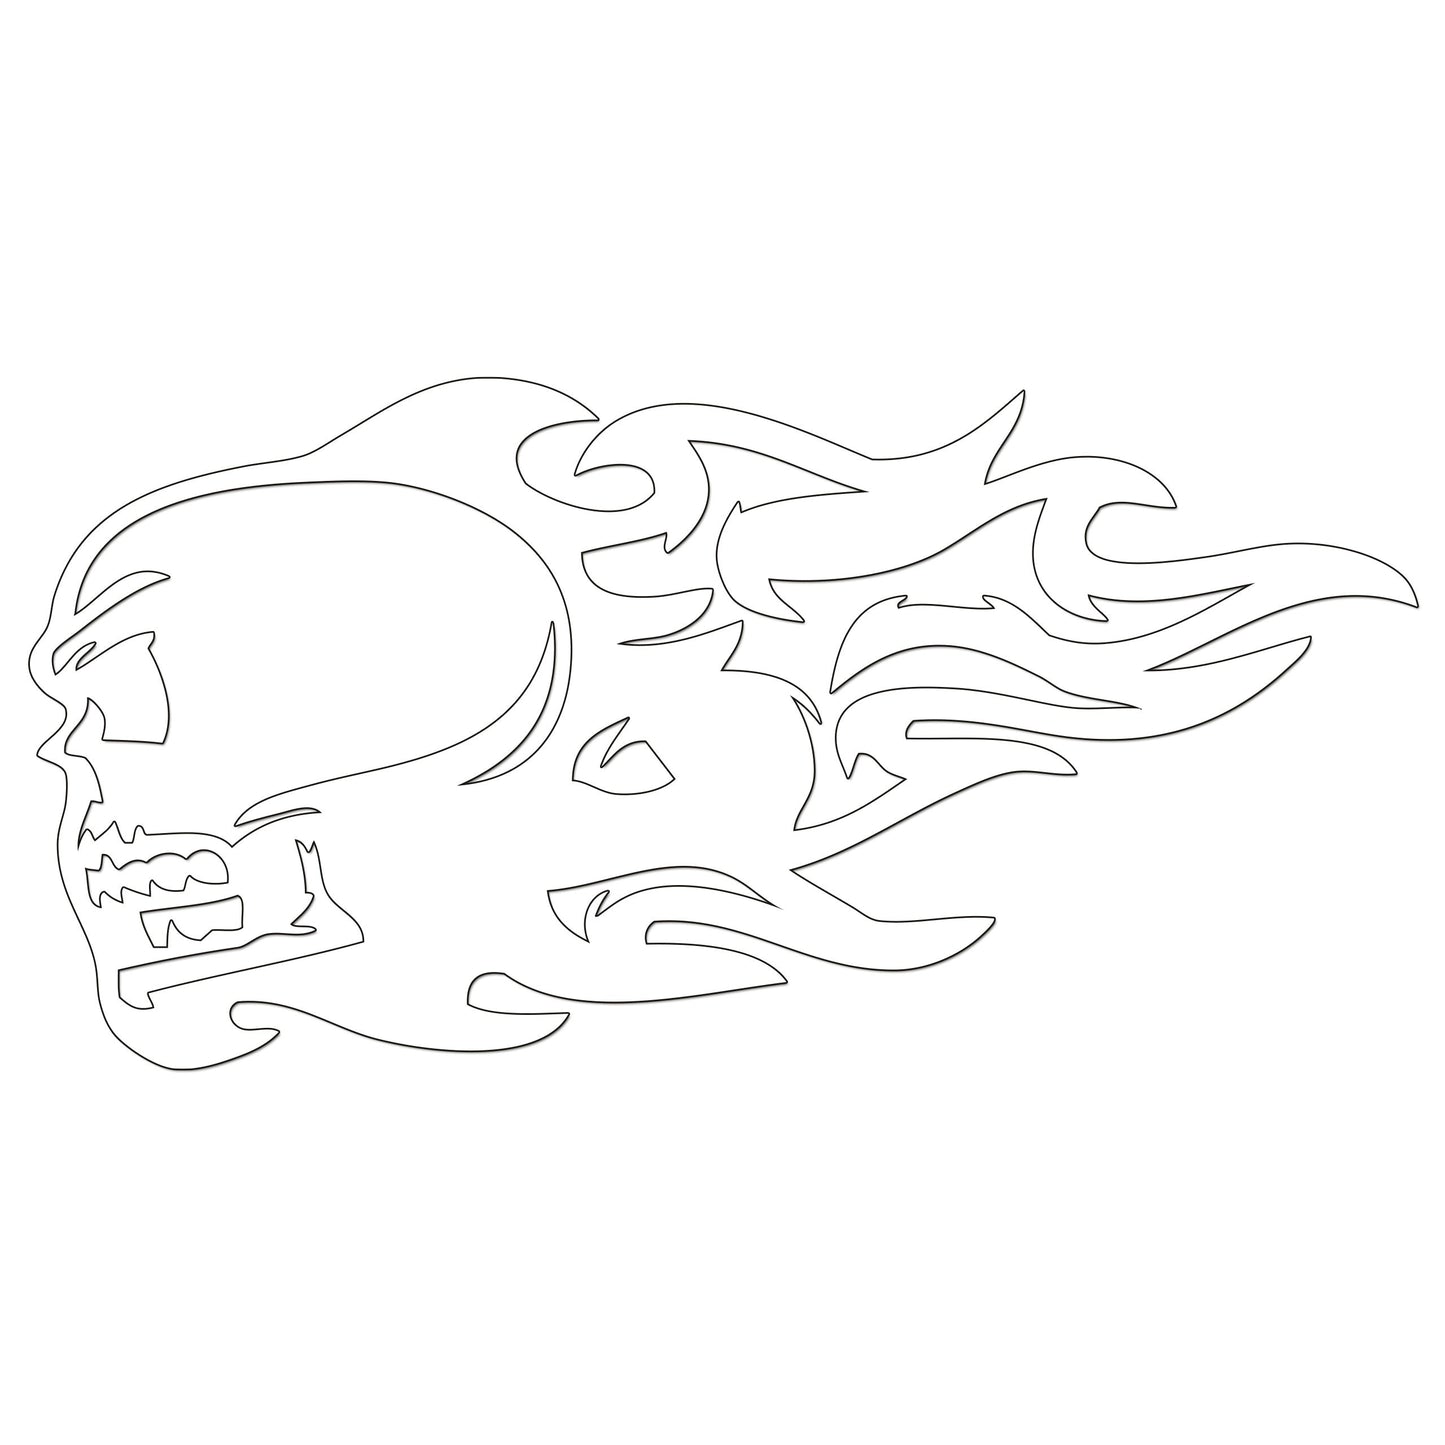 Flaming Skull Sticker